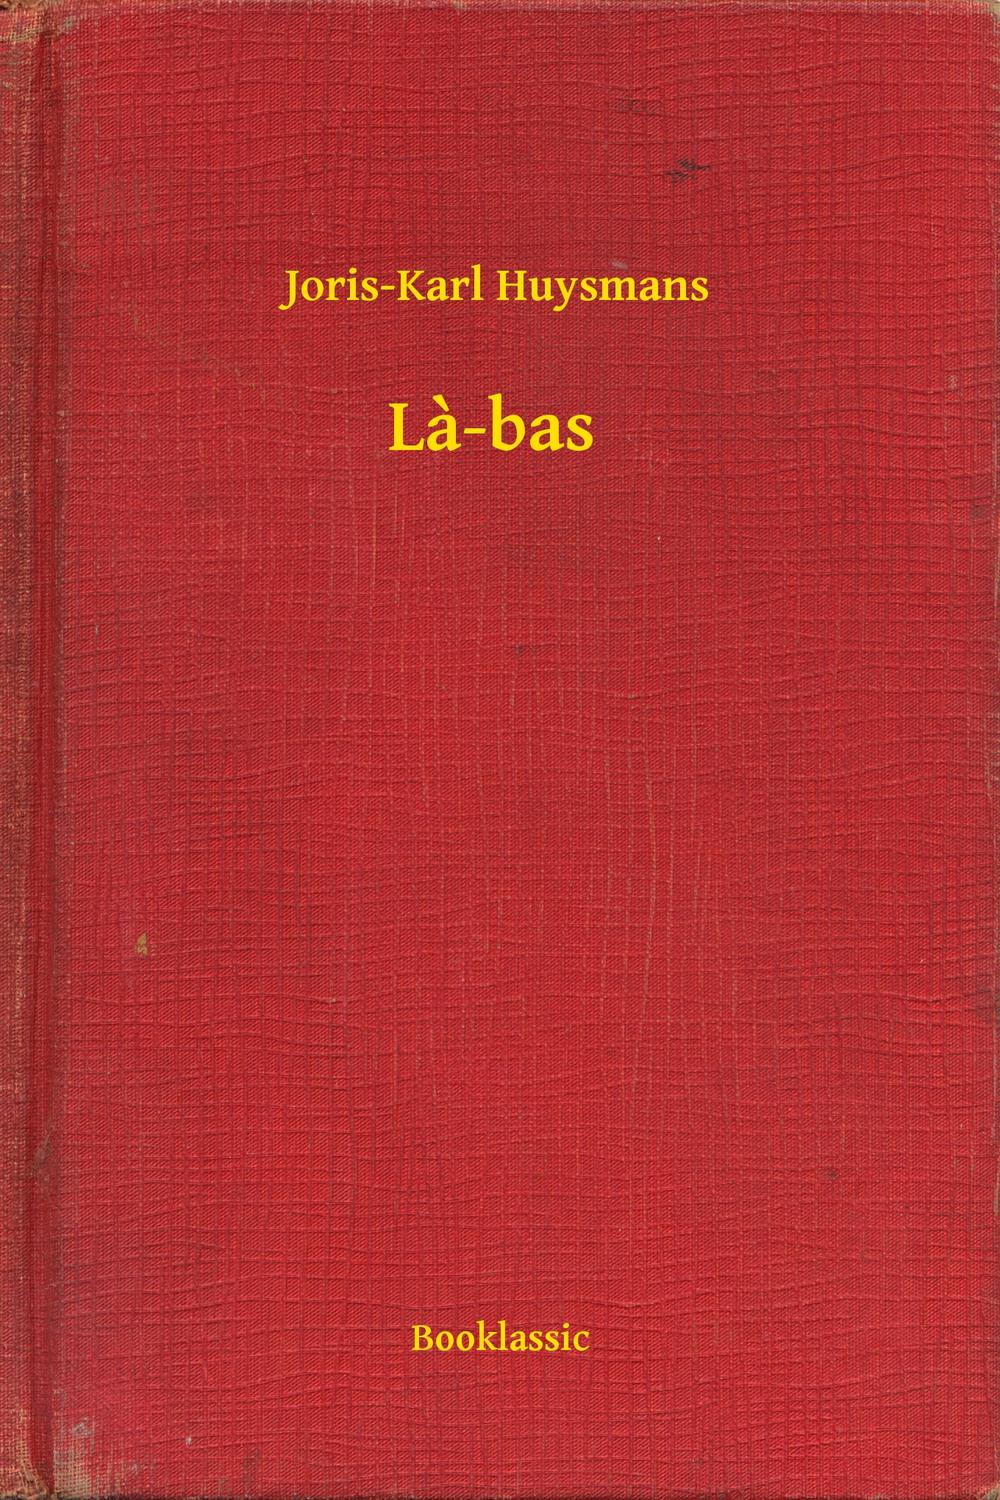 La-bas - Joris-Karl Huysmans